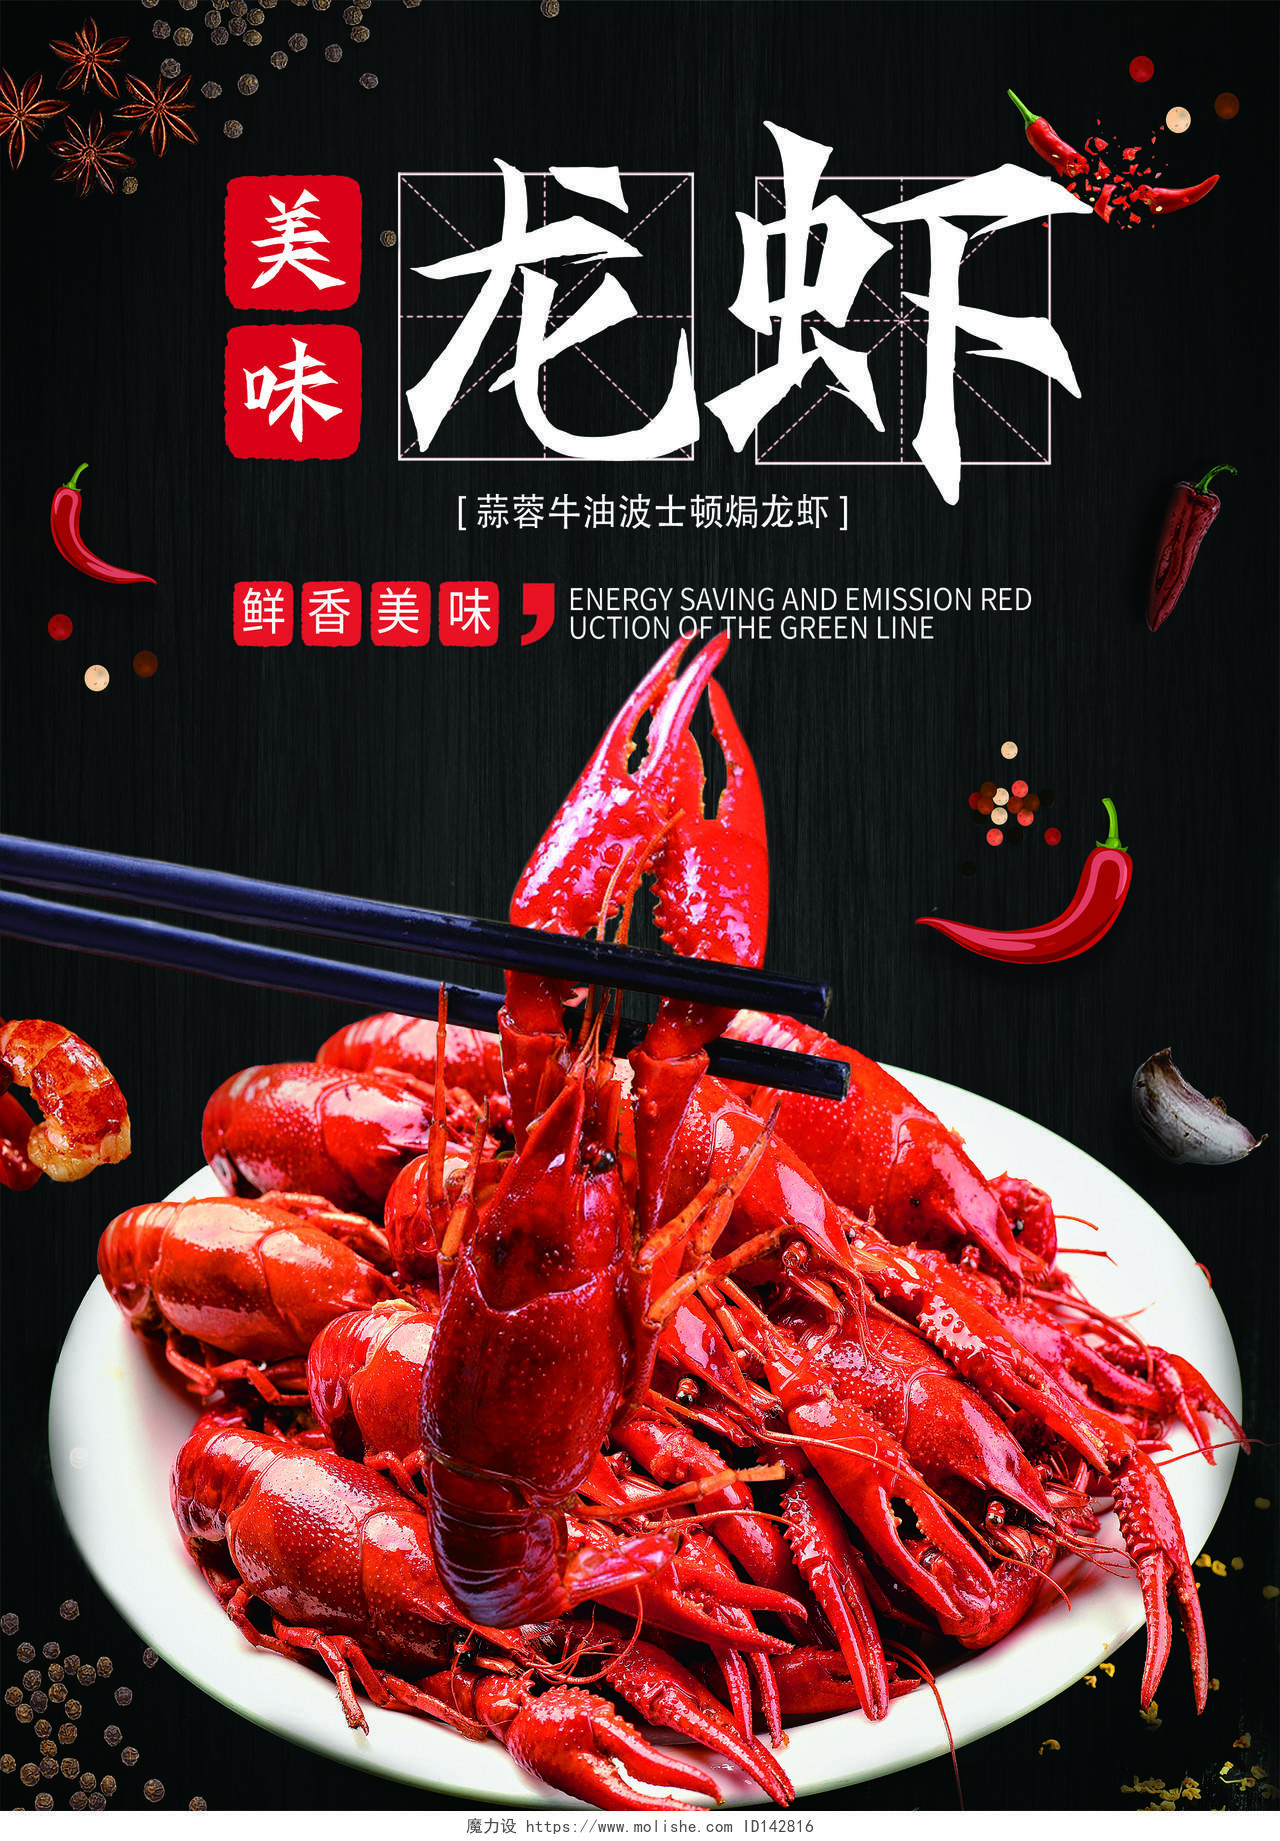 黑色背景大气海鲜菜谱菜单宣传单宣传单酒店菜单海鲜龙虾菜单海鲜菜单